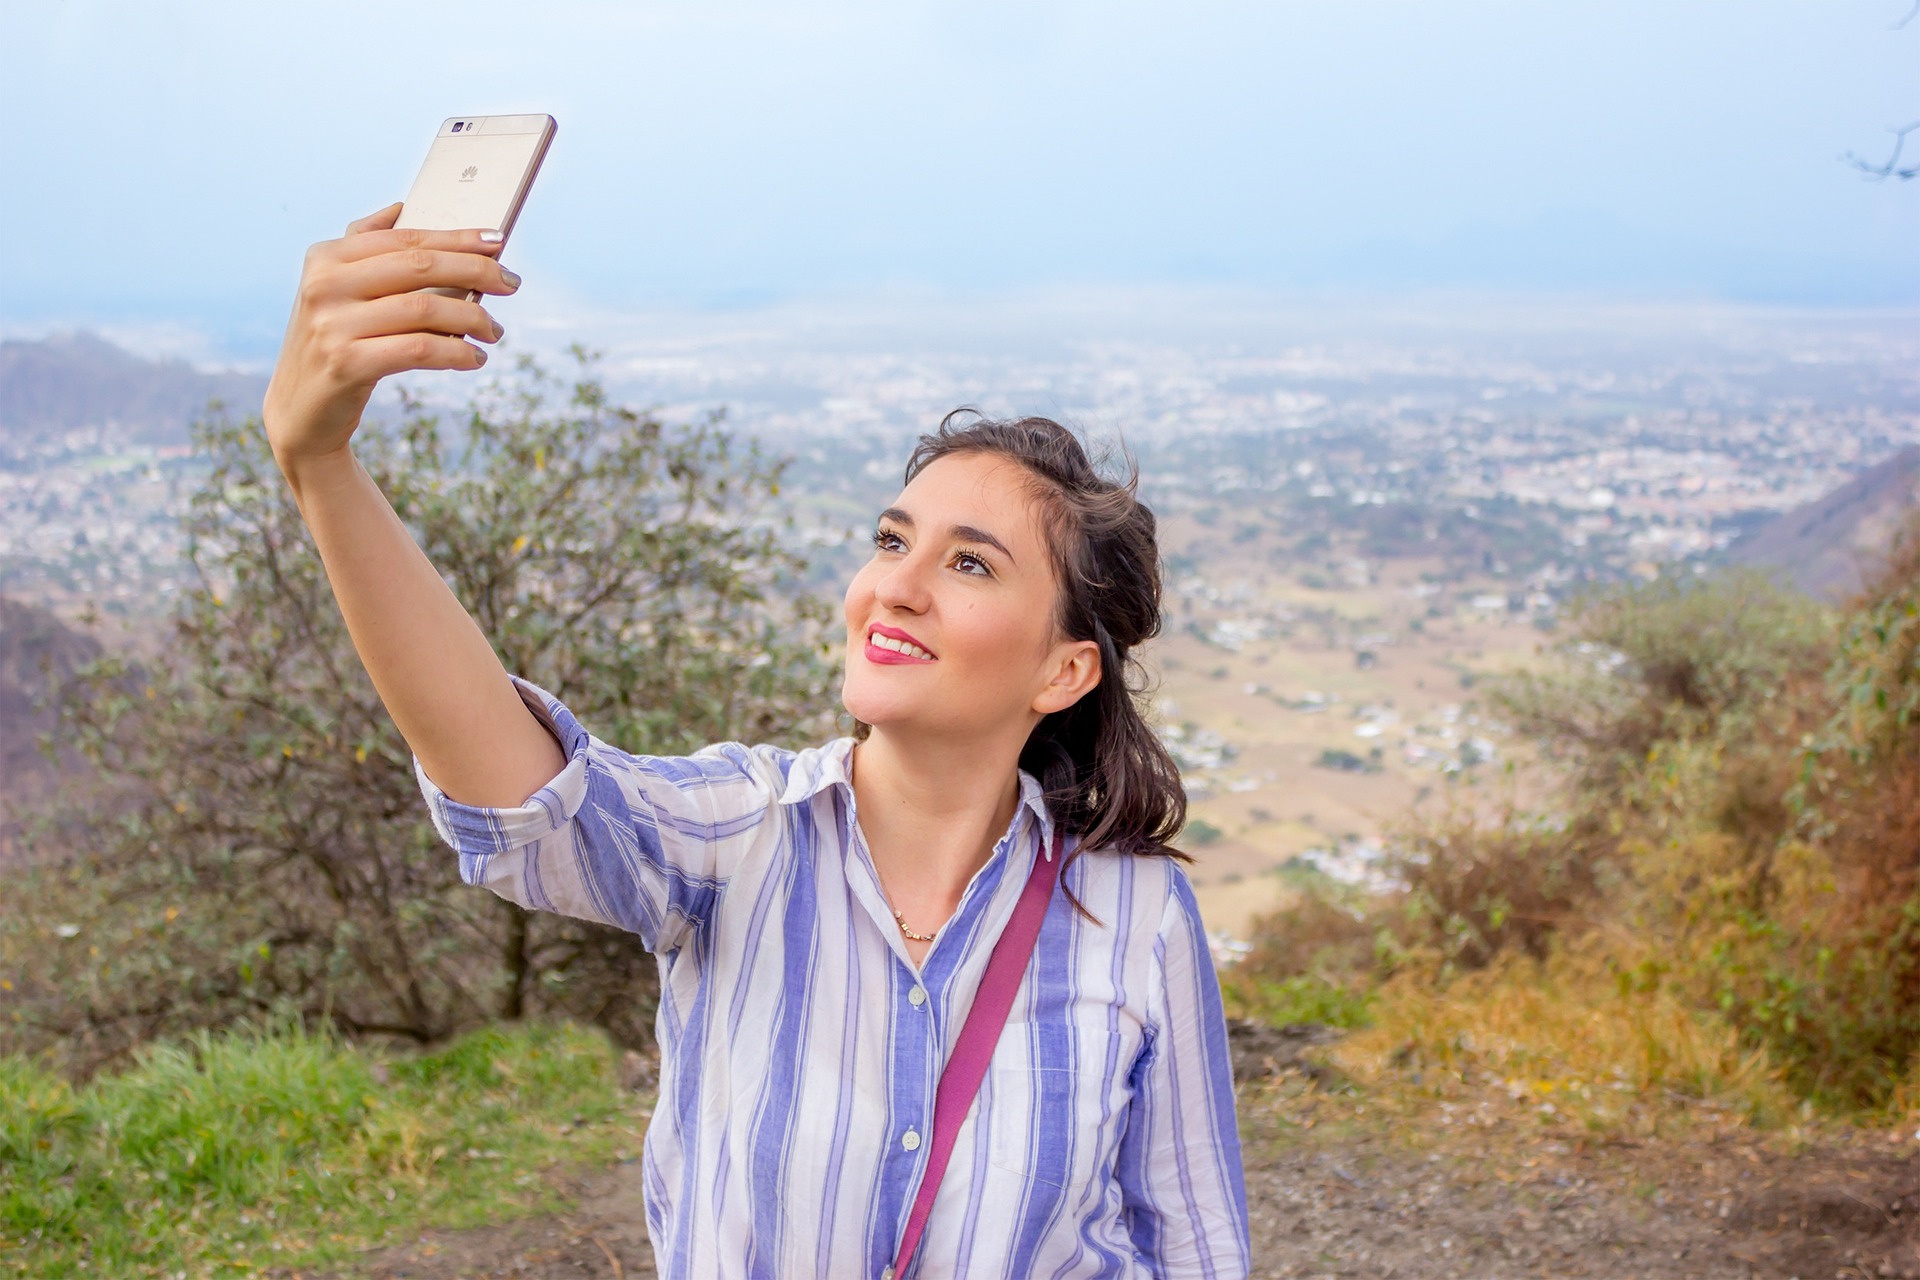 Astuces pour un selfie parfait avec votre téléphone portable